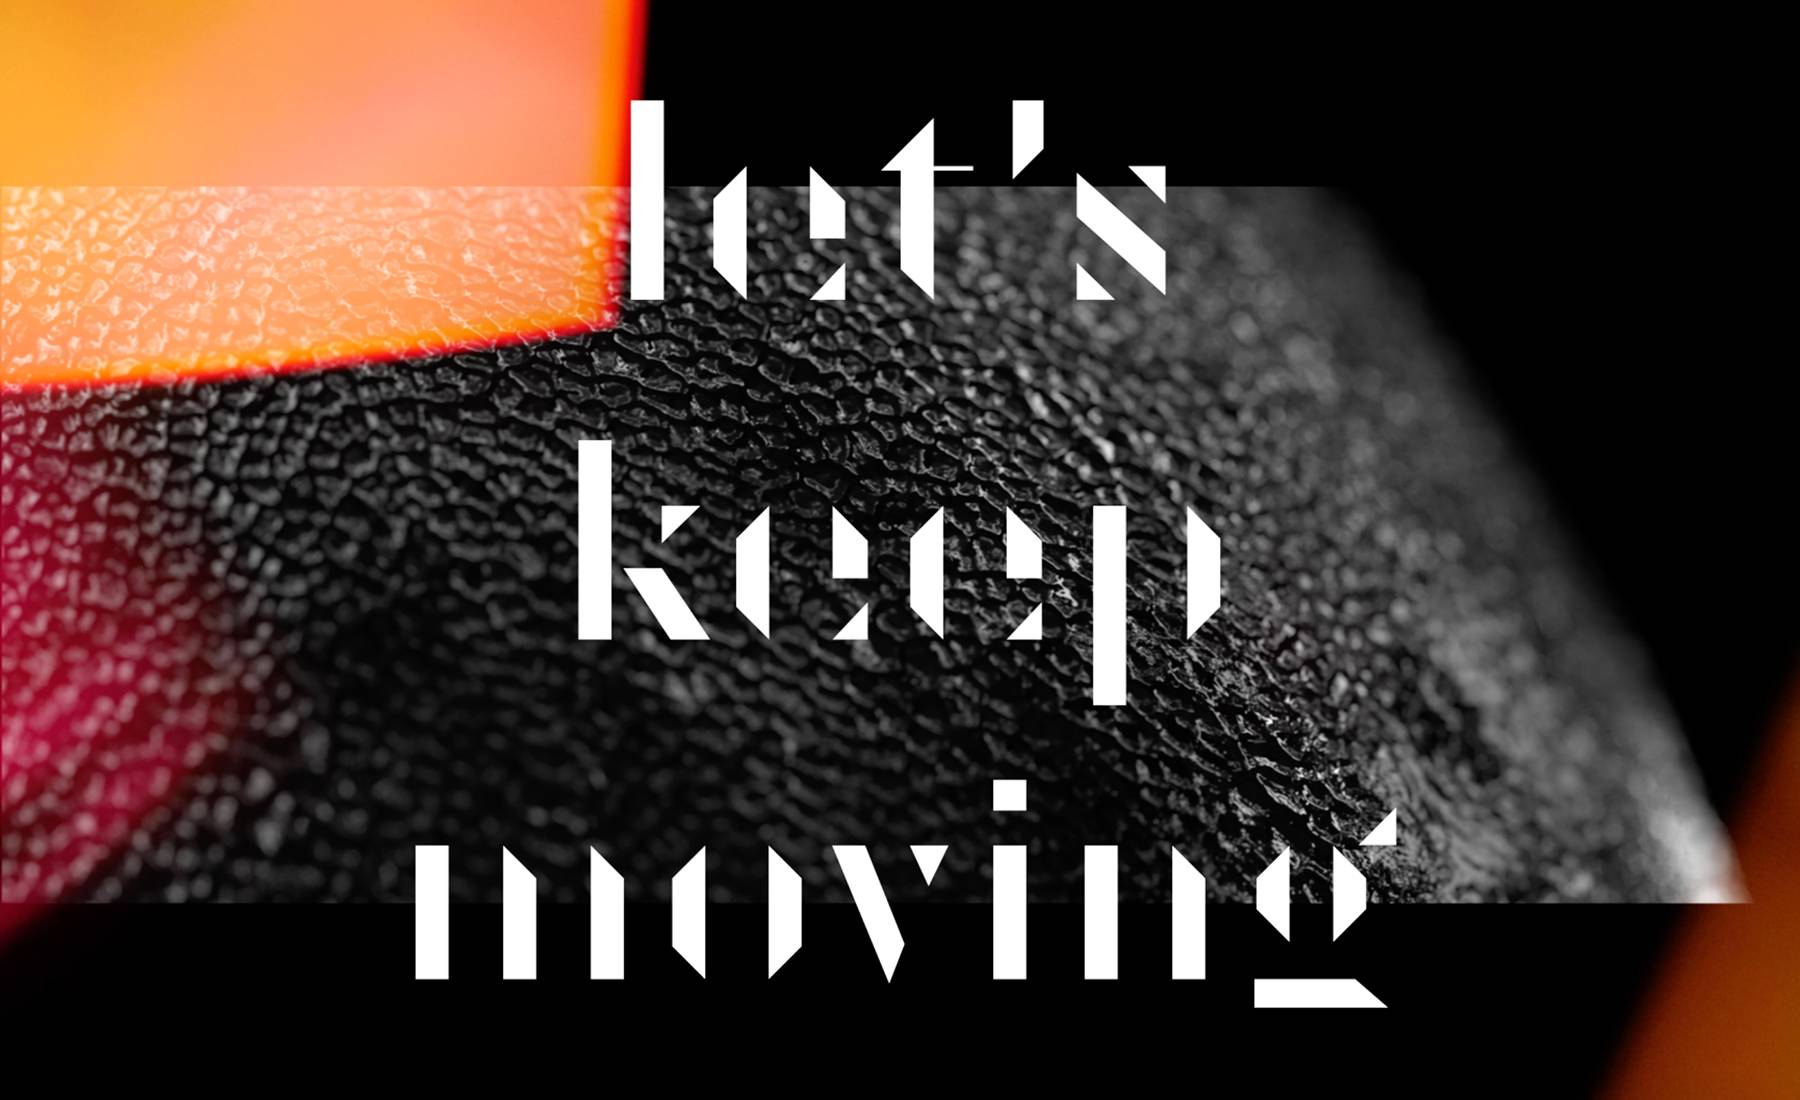 Kastuvas emie keep on moving. Keep moving forward. Keep on moving kastuvas feat. Emie.